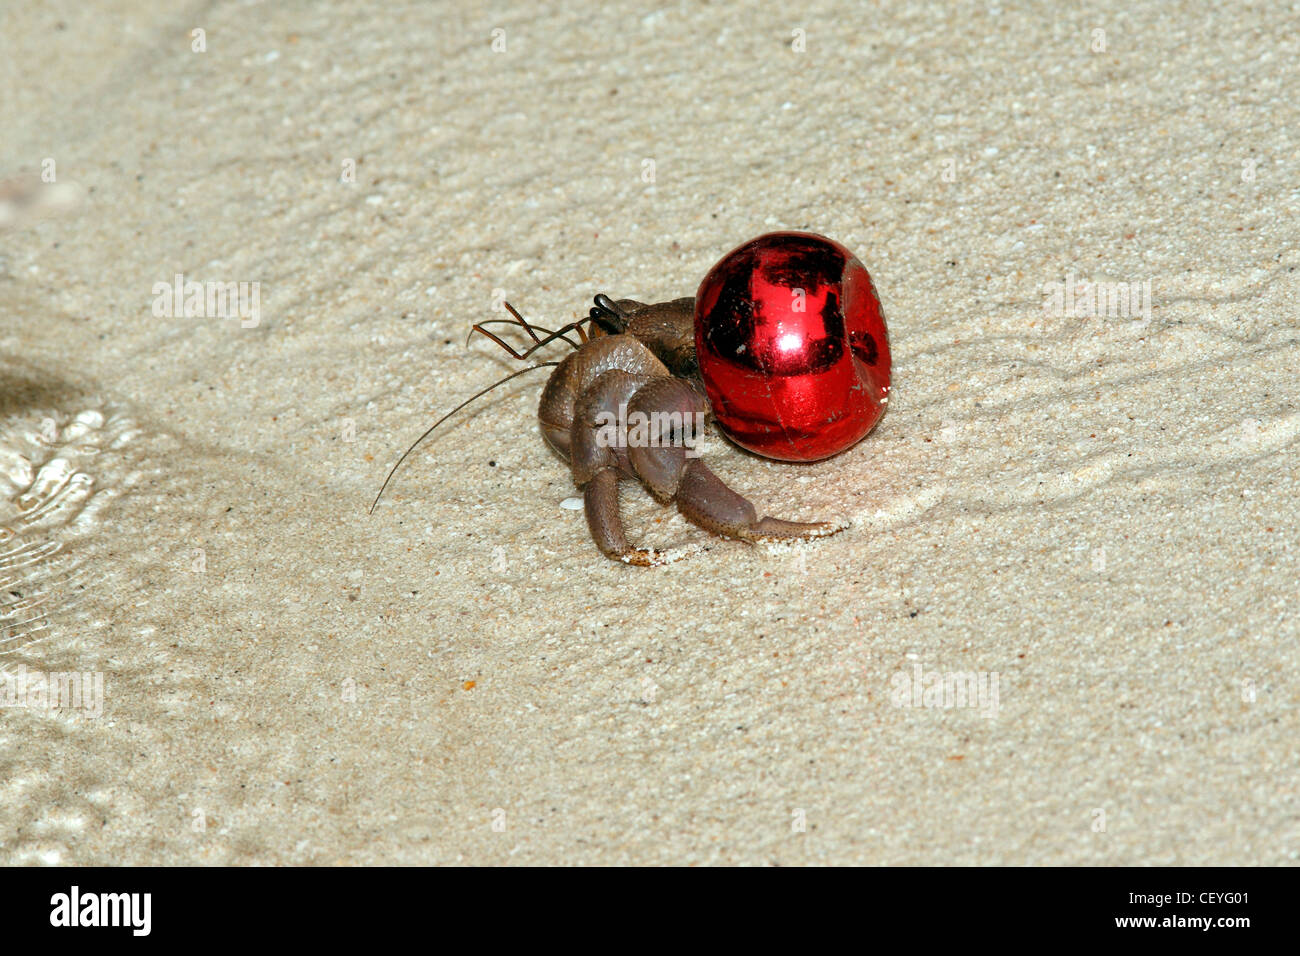 L'hermite terrestre Coenobita, est à l'aide d'un bouchon de vase rouge comme une coquille de protection au lieu de l'habituelle mollusk shell. Banque D'Images